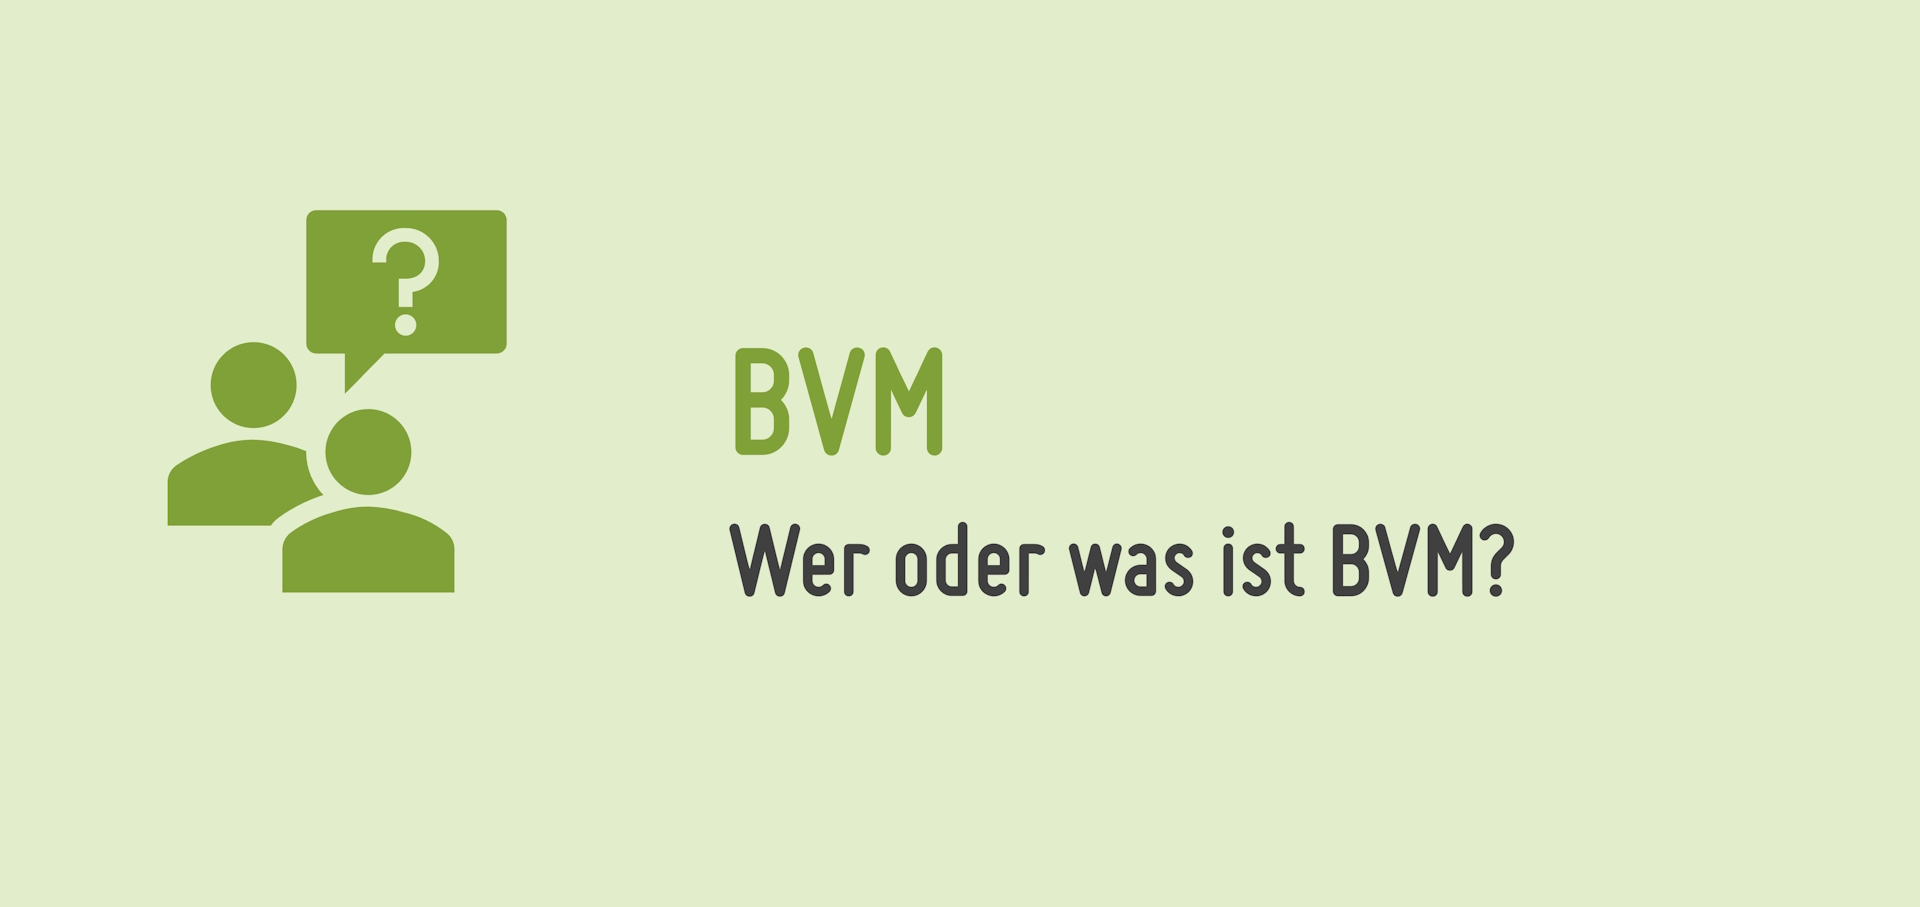 Wer oder Was ist BVM?